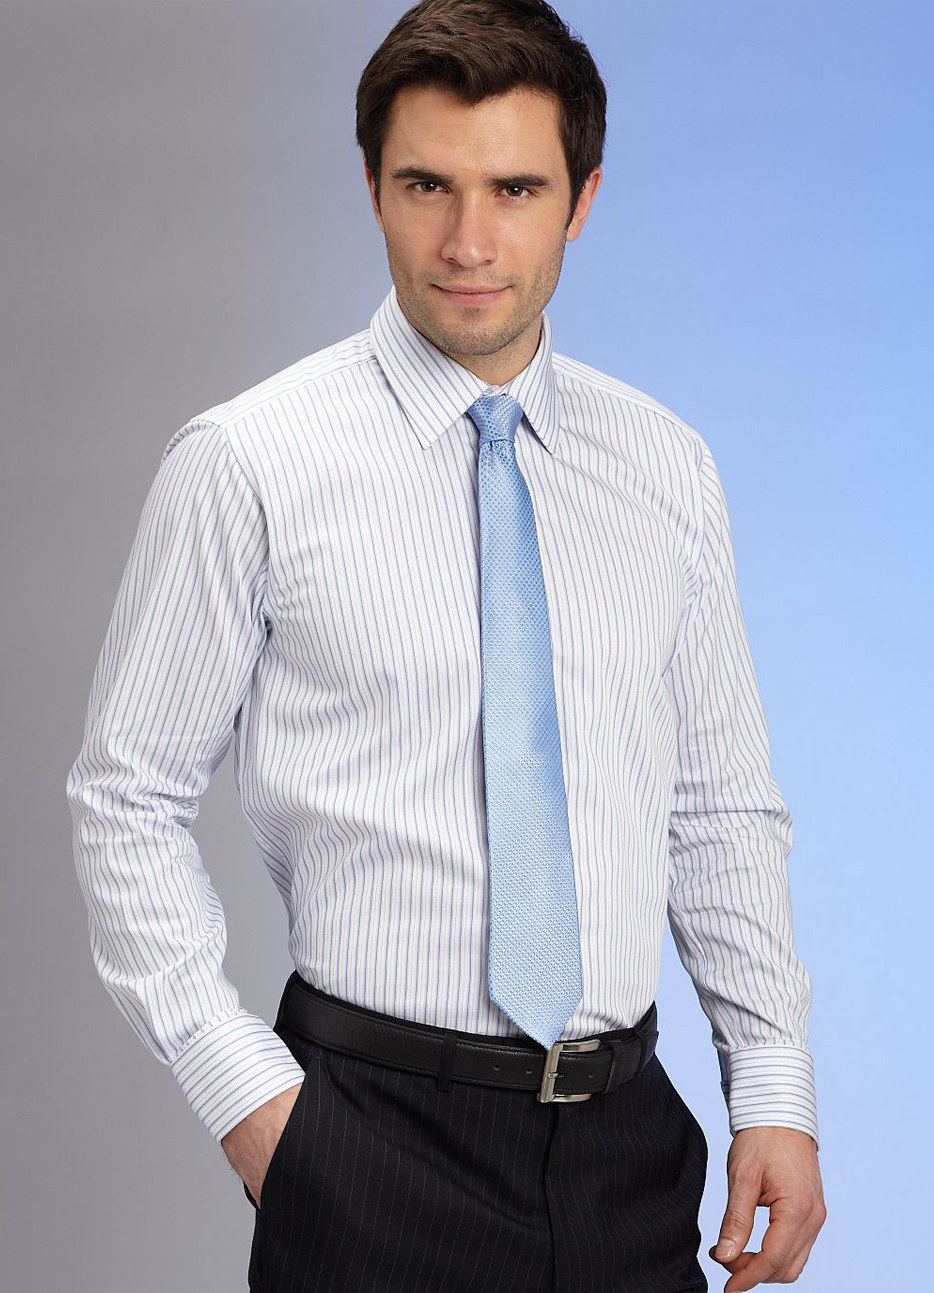 К белой рубашке галстук: Как грамотно подобрать галстук к рубашке и пиджаку